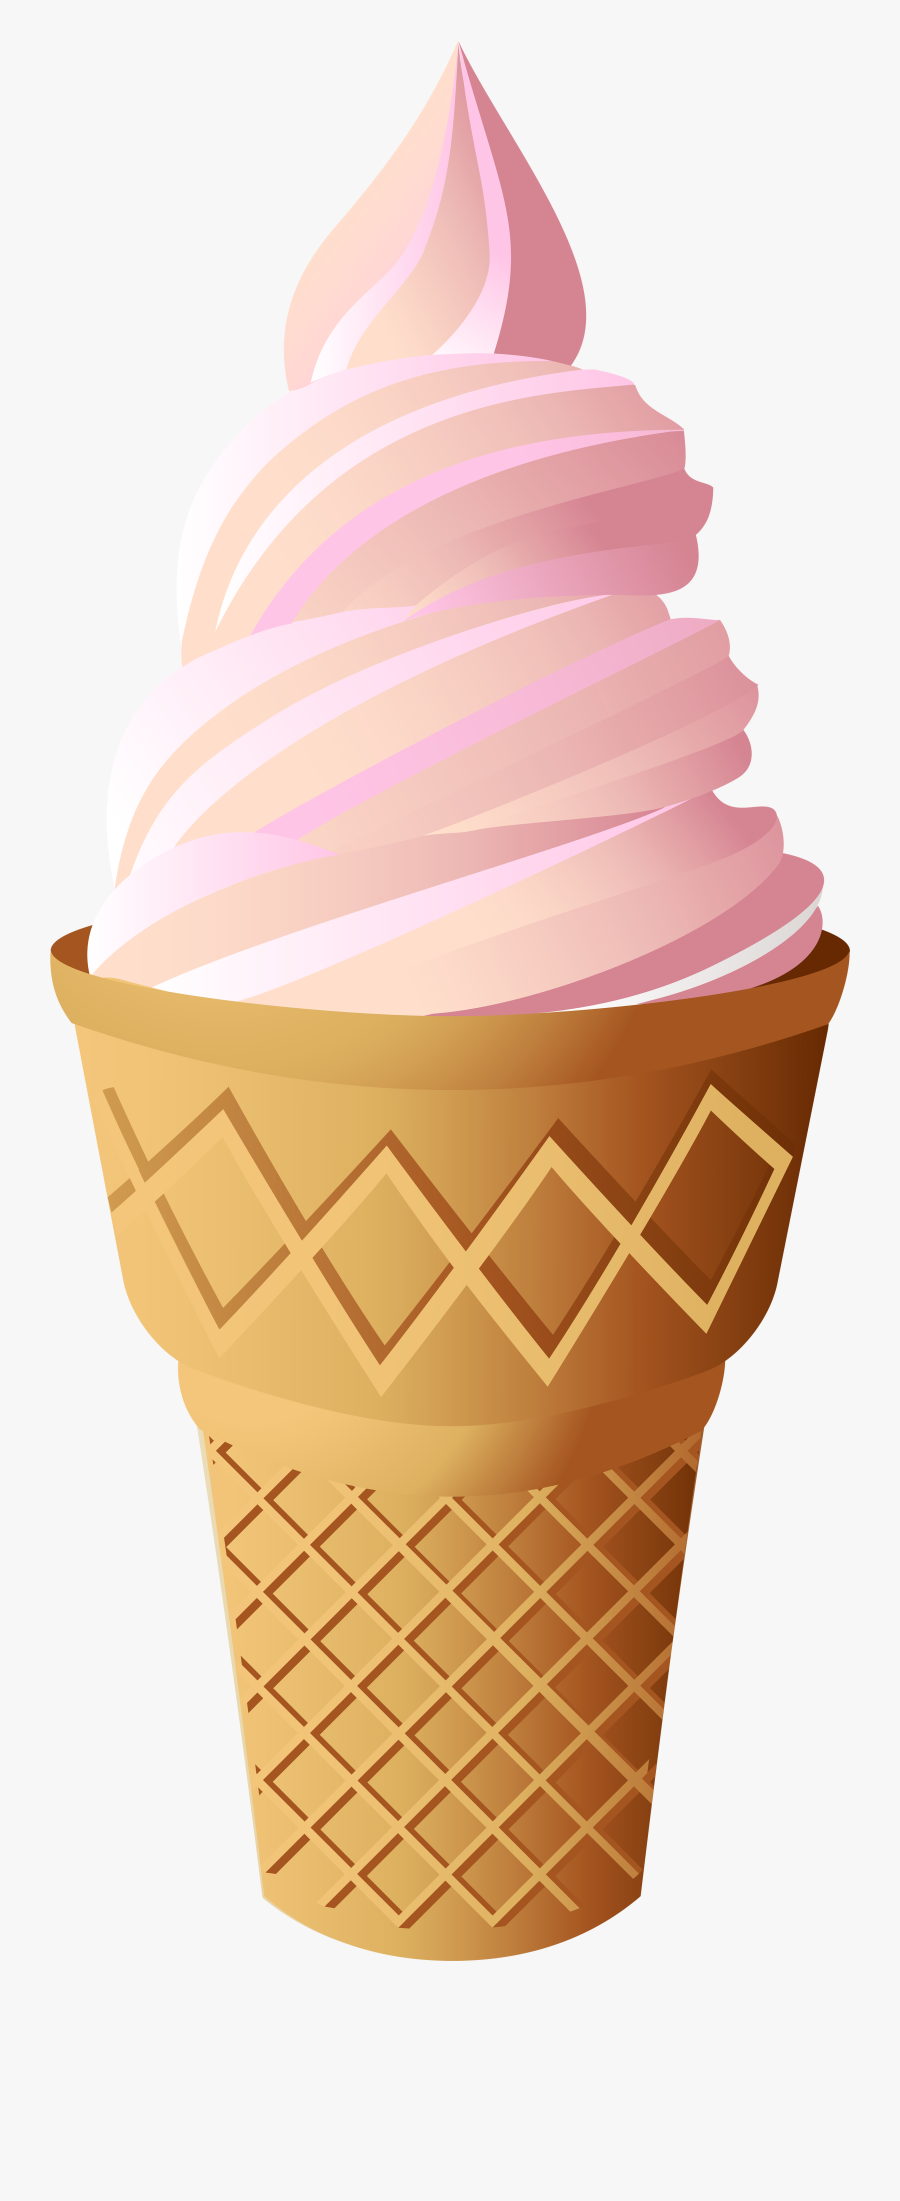 Pink Clipart Ice Cream Cone - Ice Cream Illustration Tutorial, Transparent Clipart